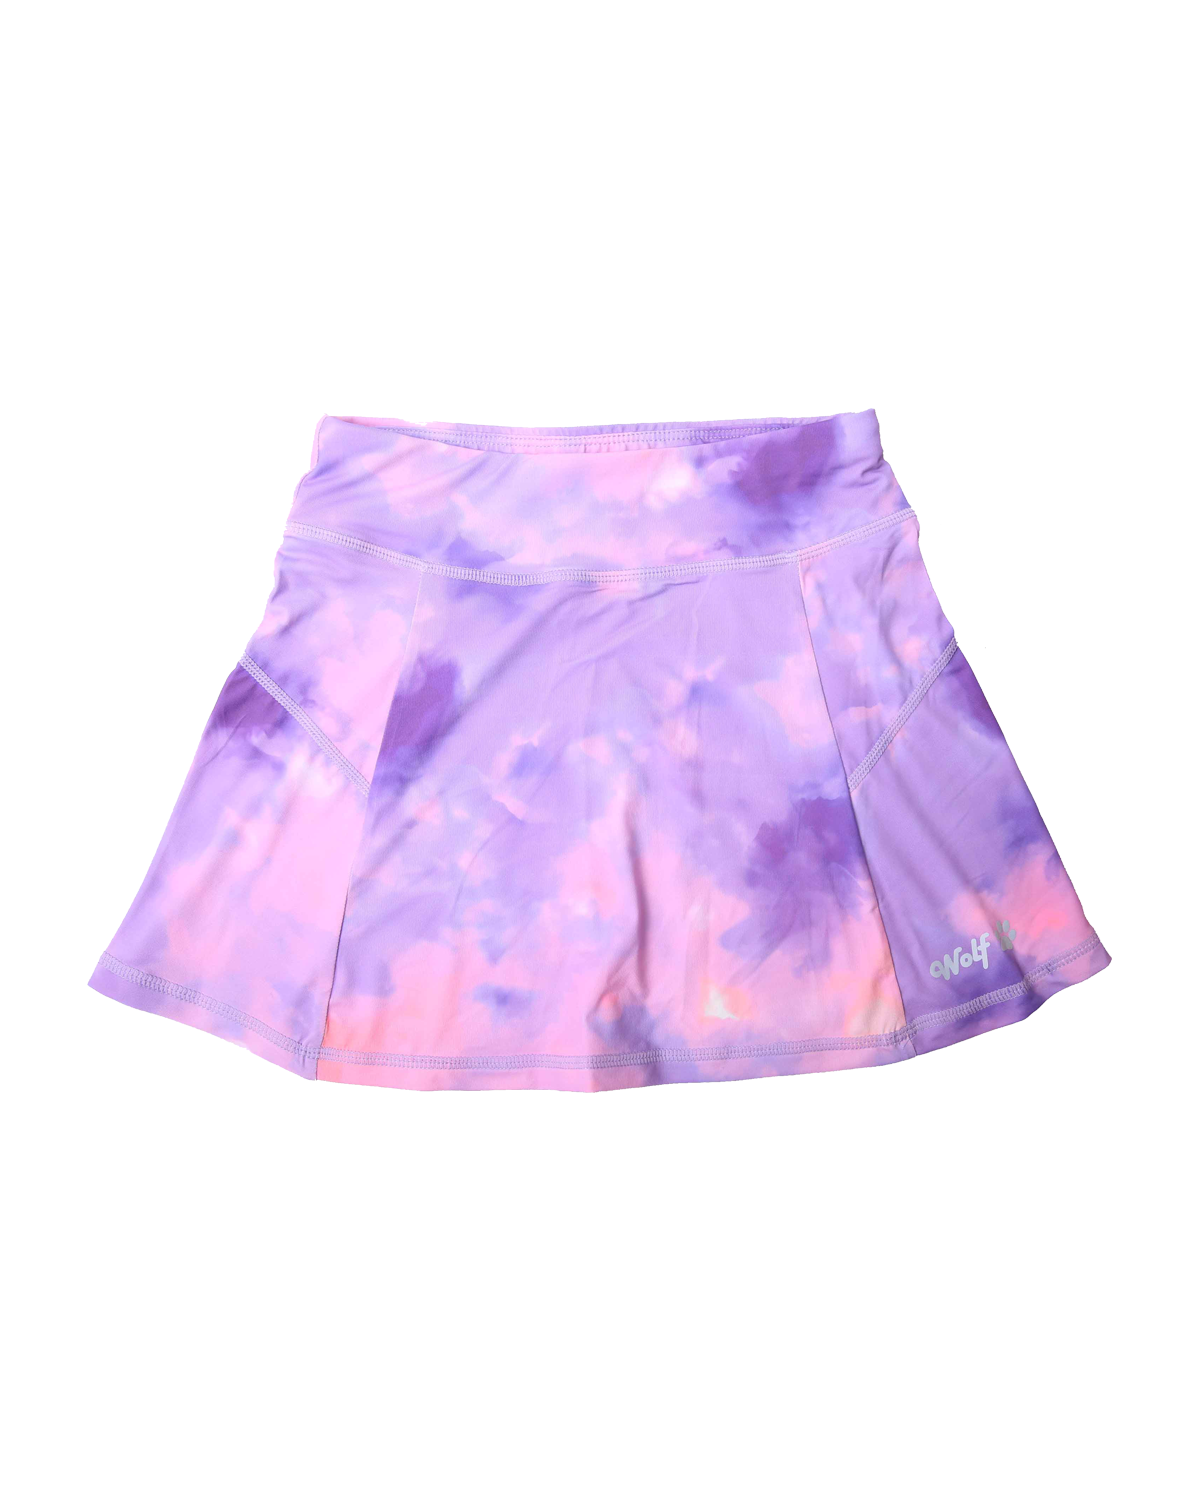 Dívčí funkční sukně - Wolf H2466, fialková / růžová Barva: Fialková, Velikost: 116